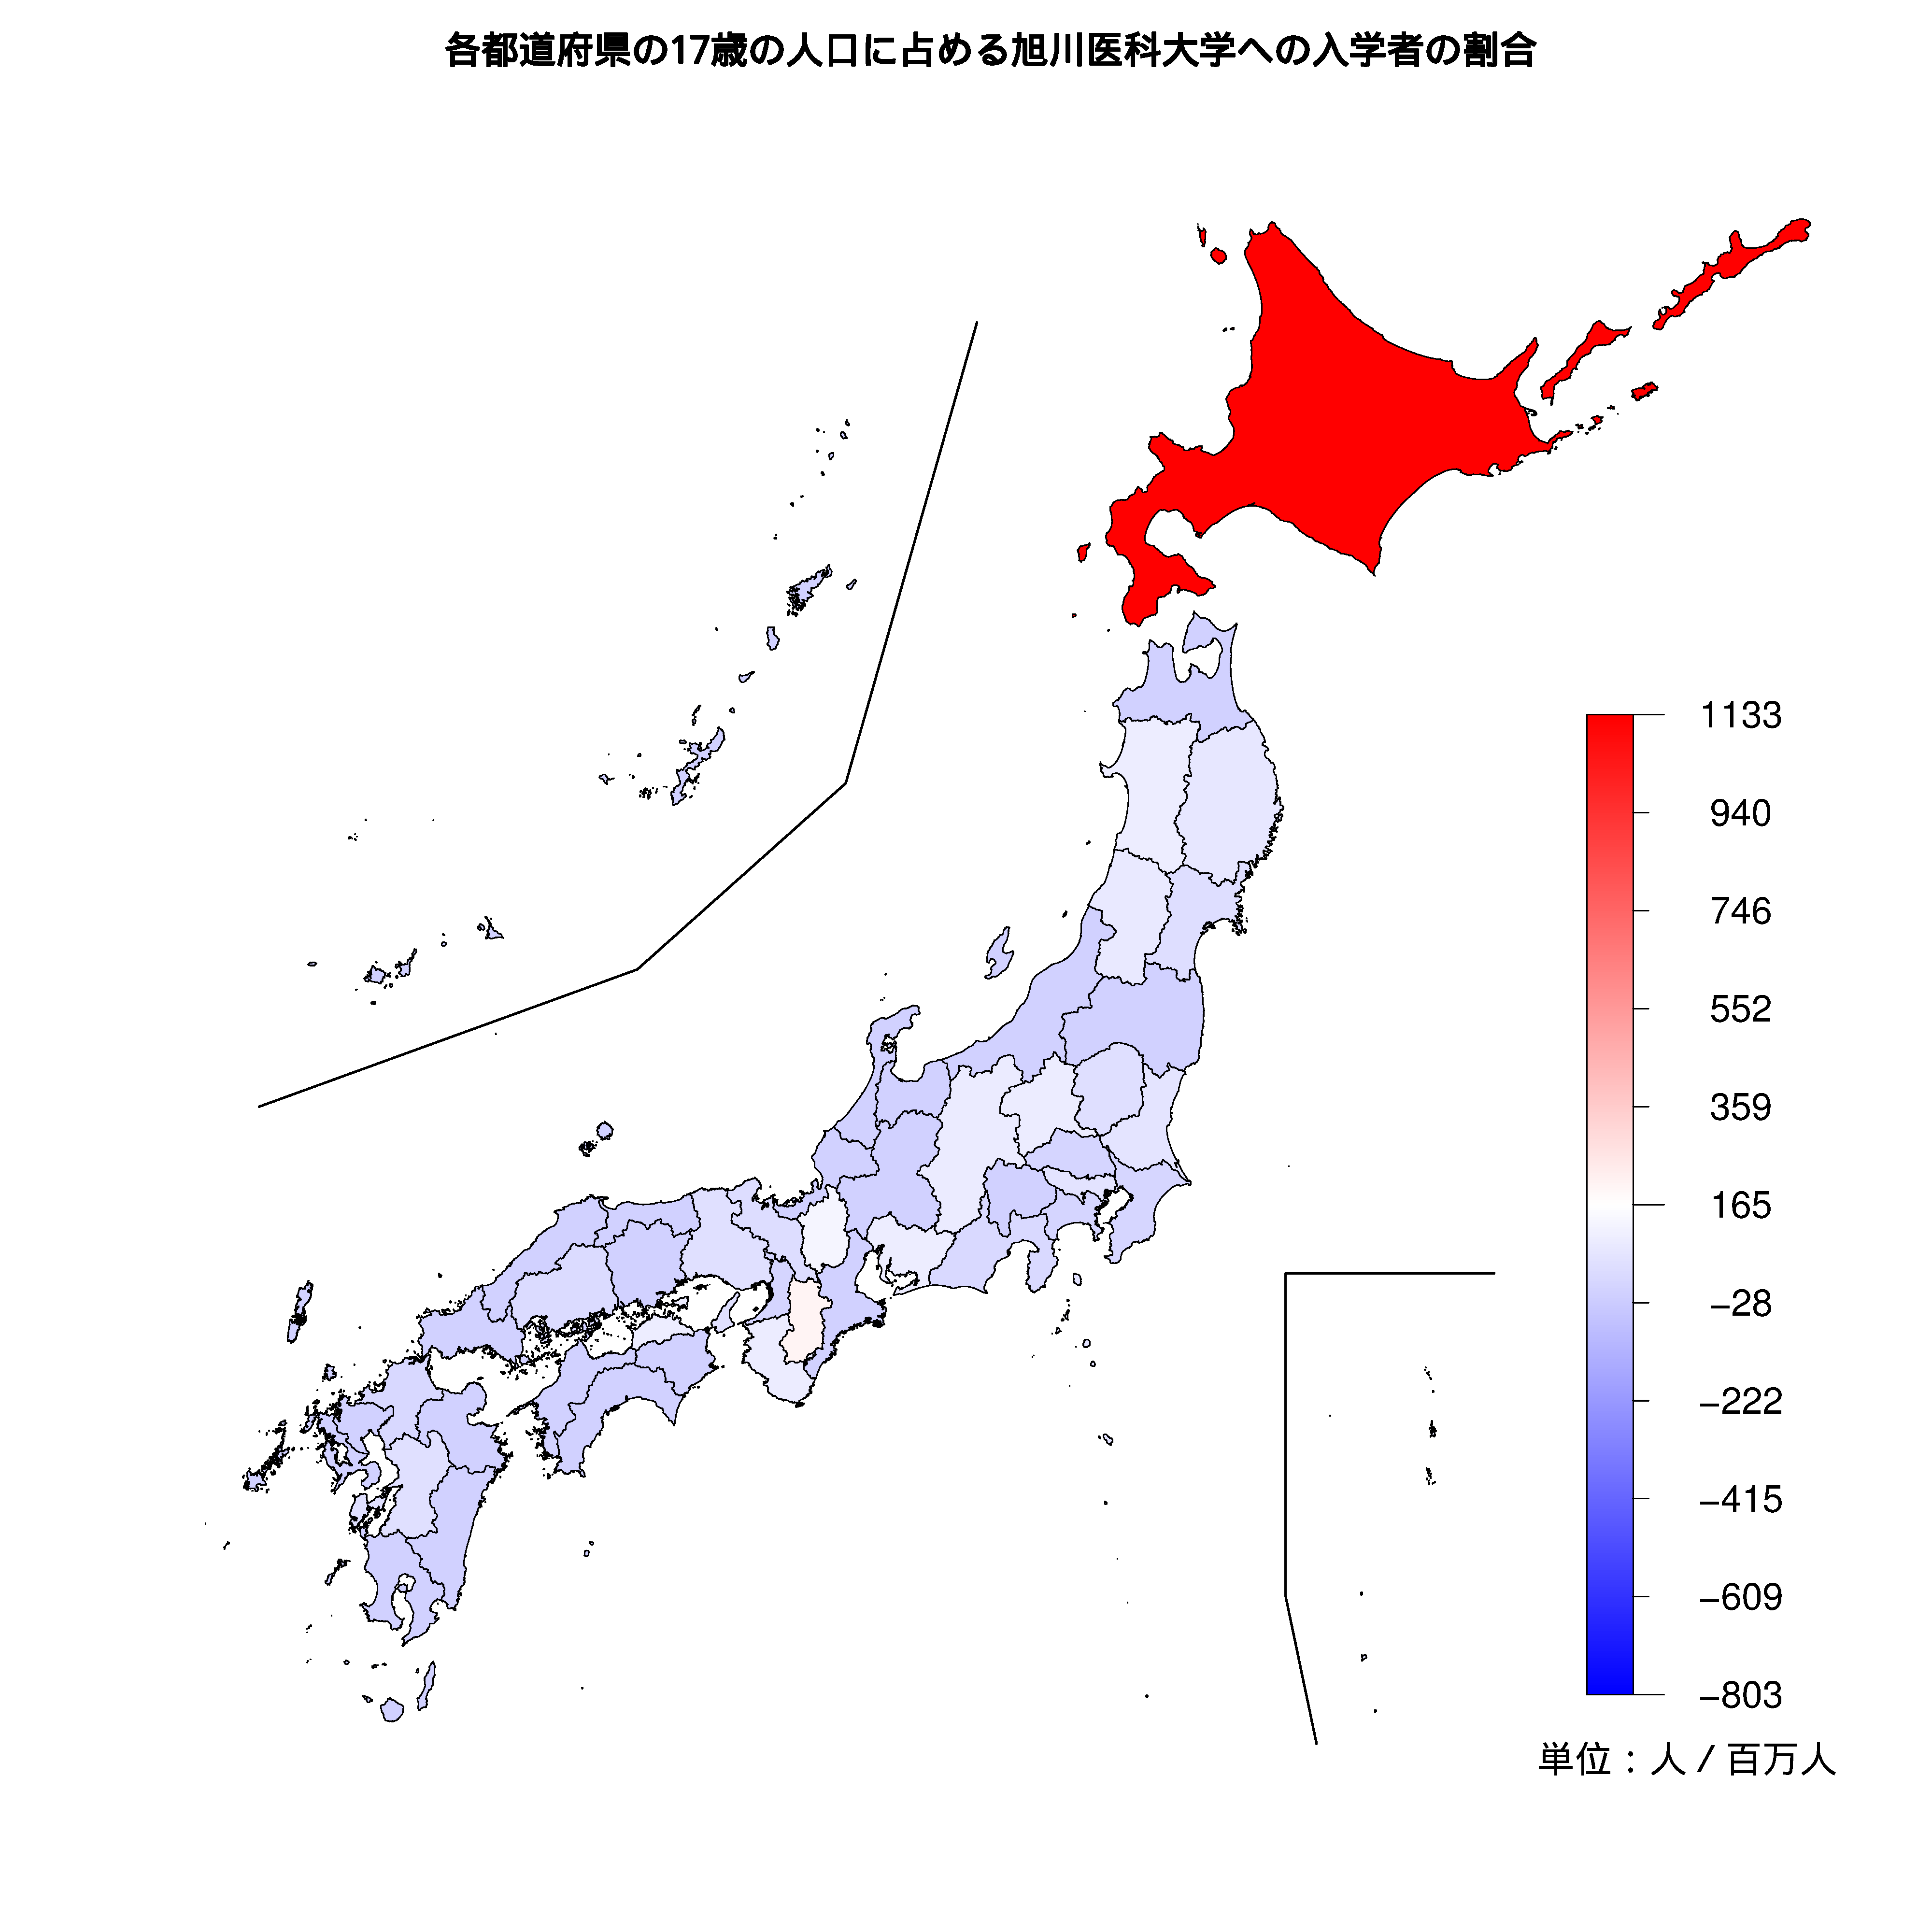 旭川医科大学への入学者が多い都道府県の色分け地図